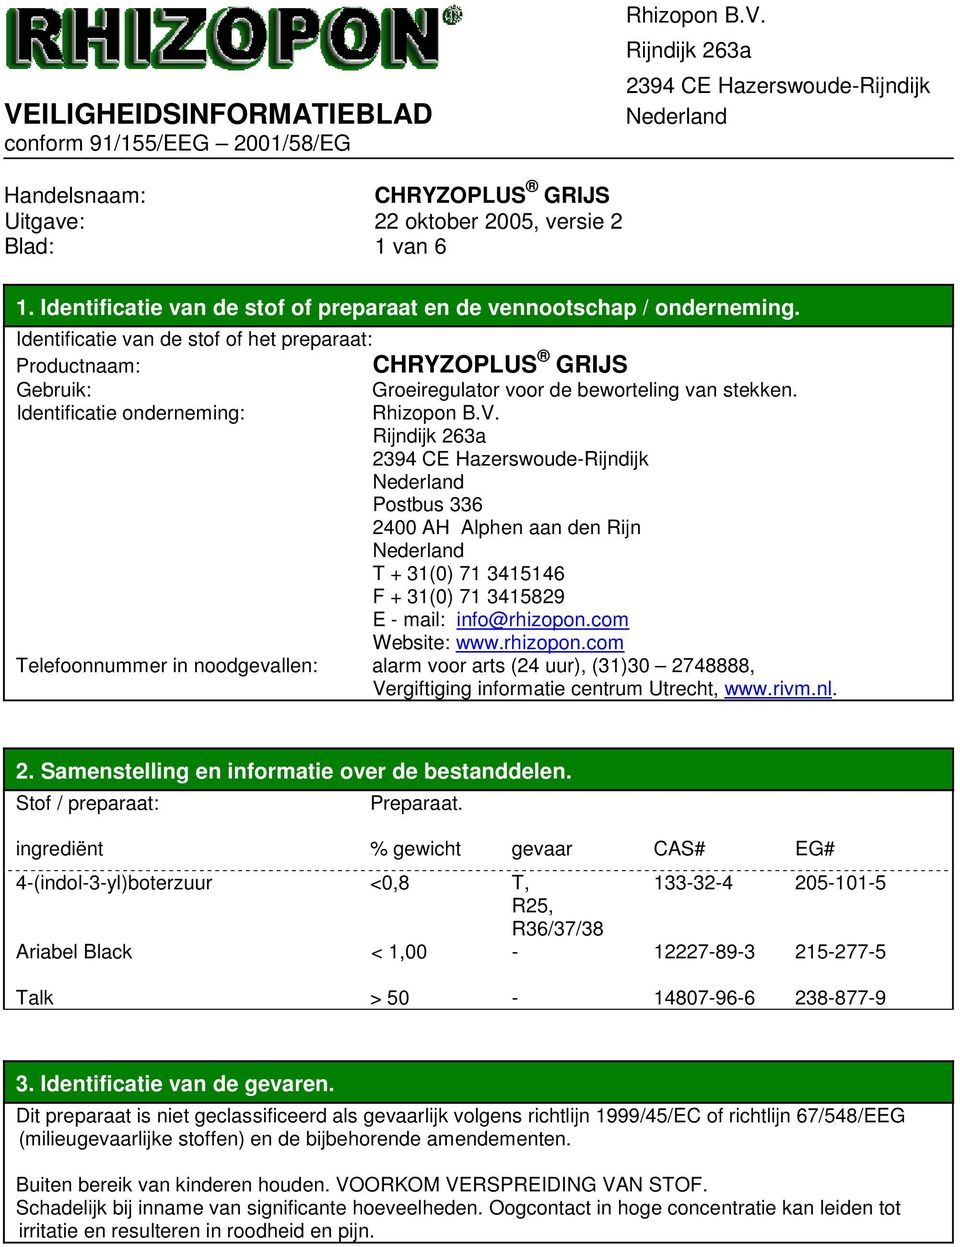 Identificatie onderneming: Postbus 336 2400 AH Alphen aan den Rijn T + 31(0) 71 3415146 F + 31(0) 71 3415829 E - mail: info@rhizopon.